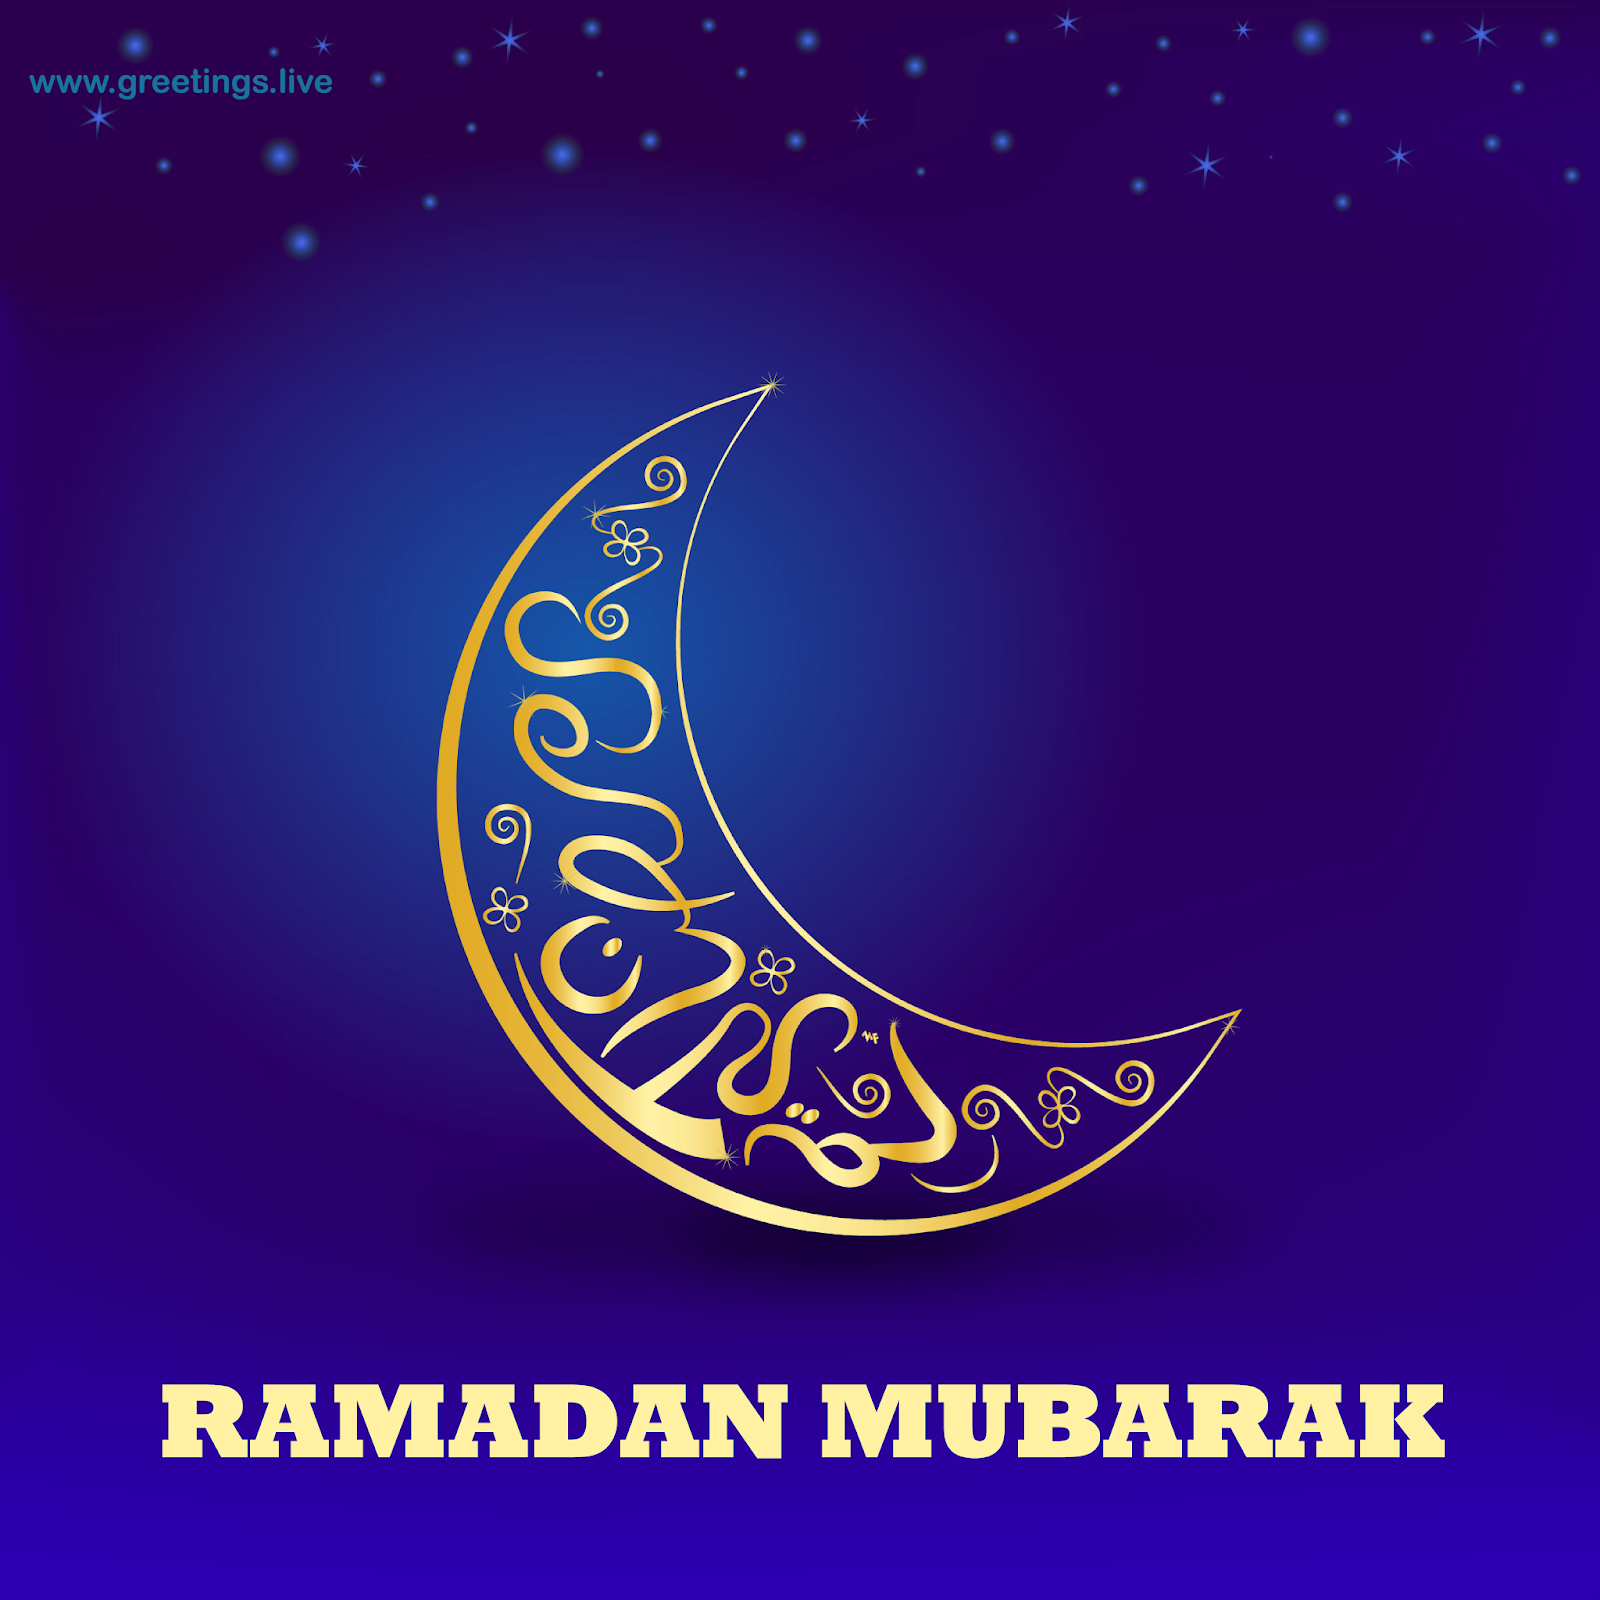 Ramadan Eid Mubarak 2019 - HD Wallpaper 